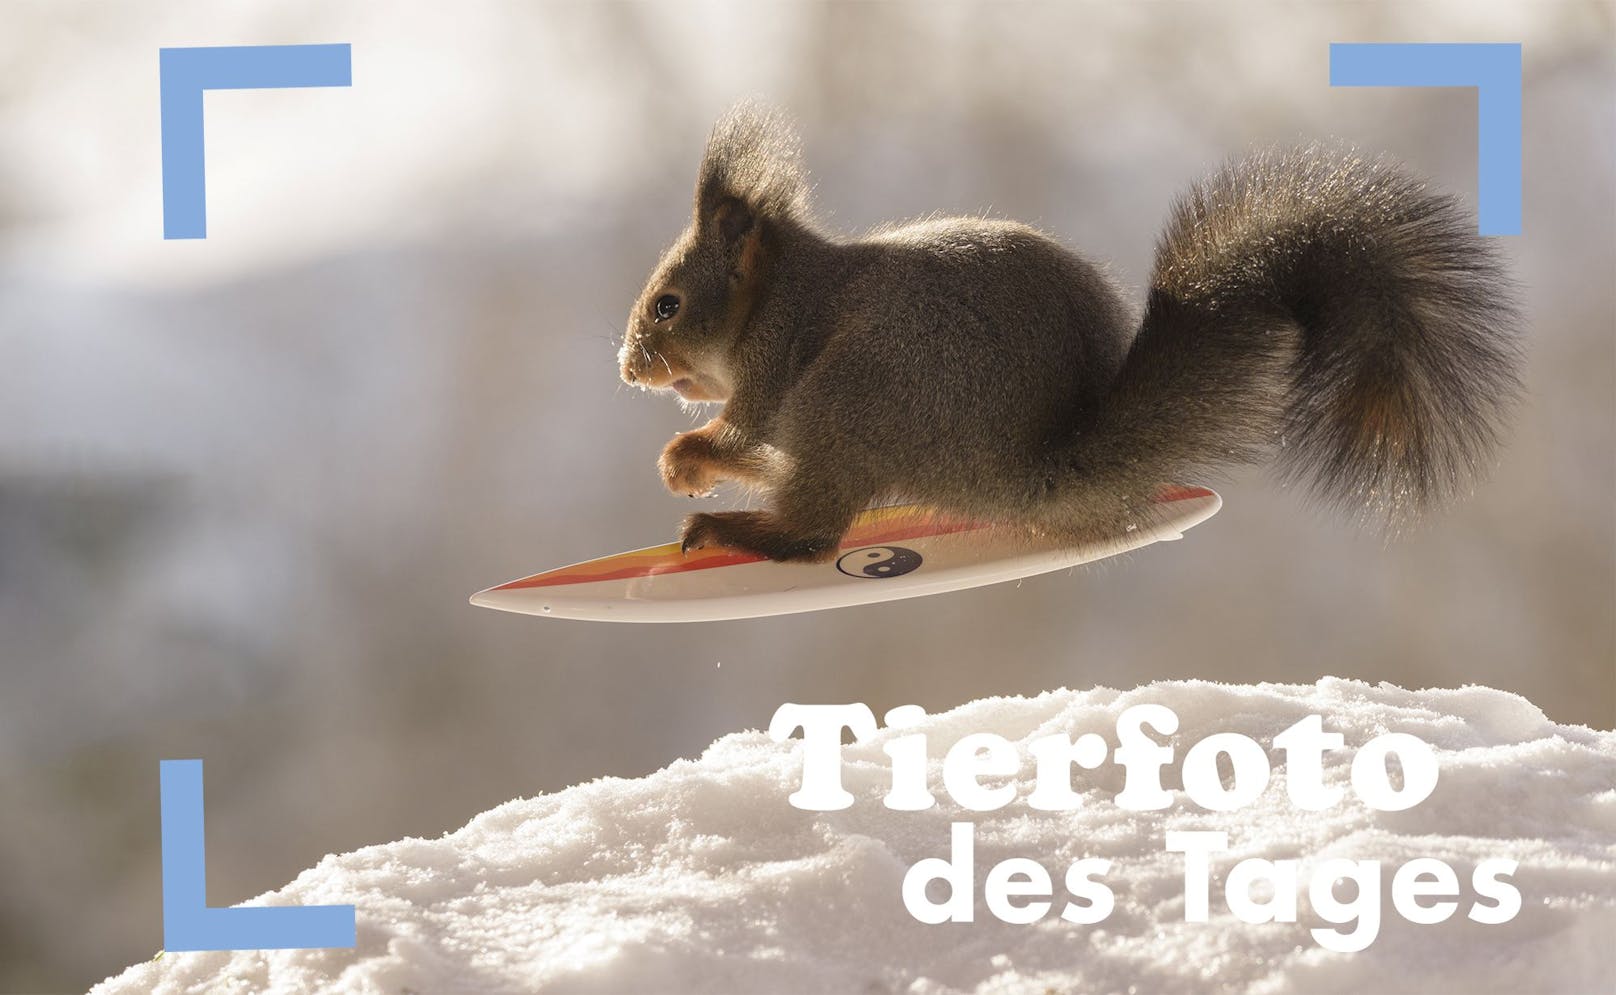 Wusch! Ein Eichhörnchen auf einem Snowboard. Tierfotograf Geert Weggen aus Schweden hat sich den Eichhörnchen verschrieben. 